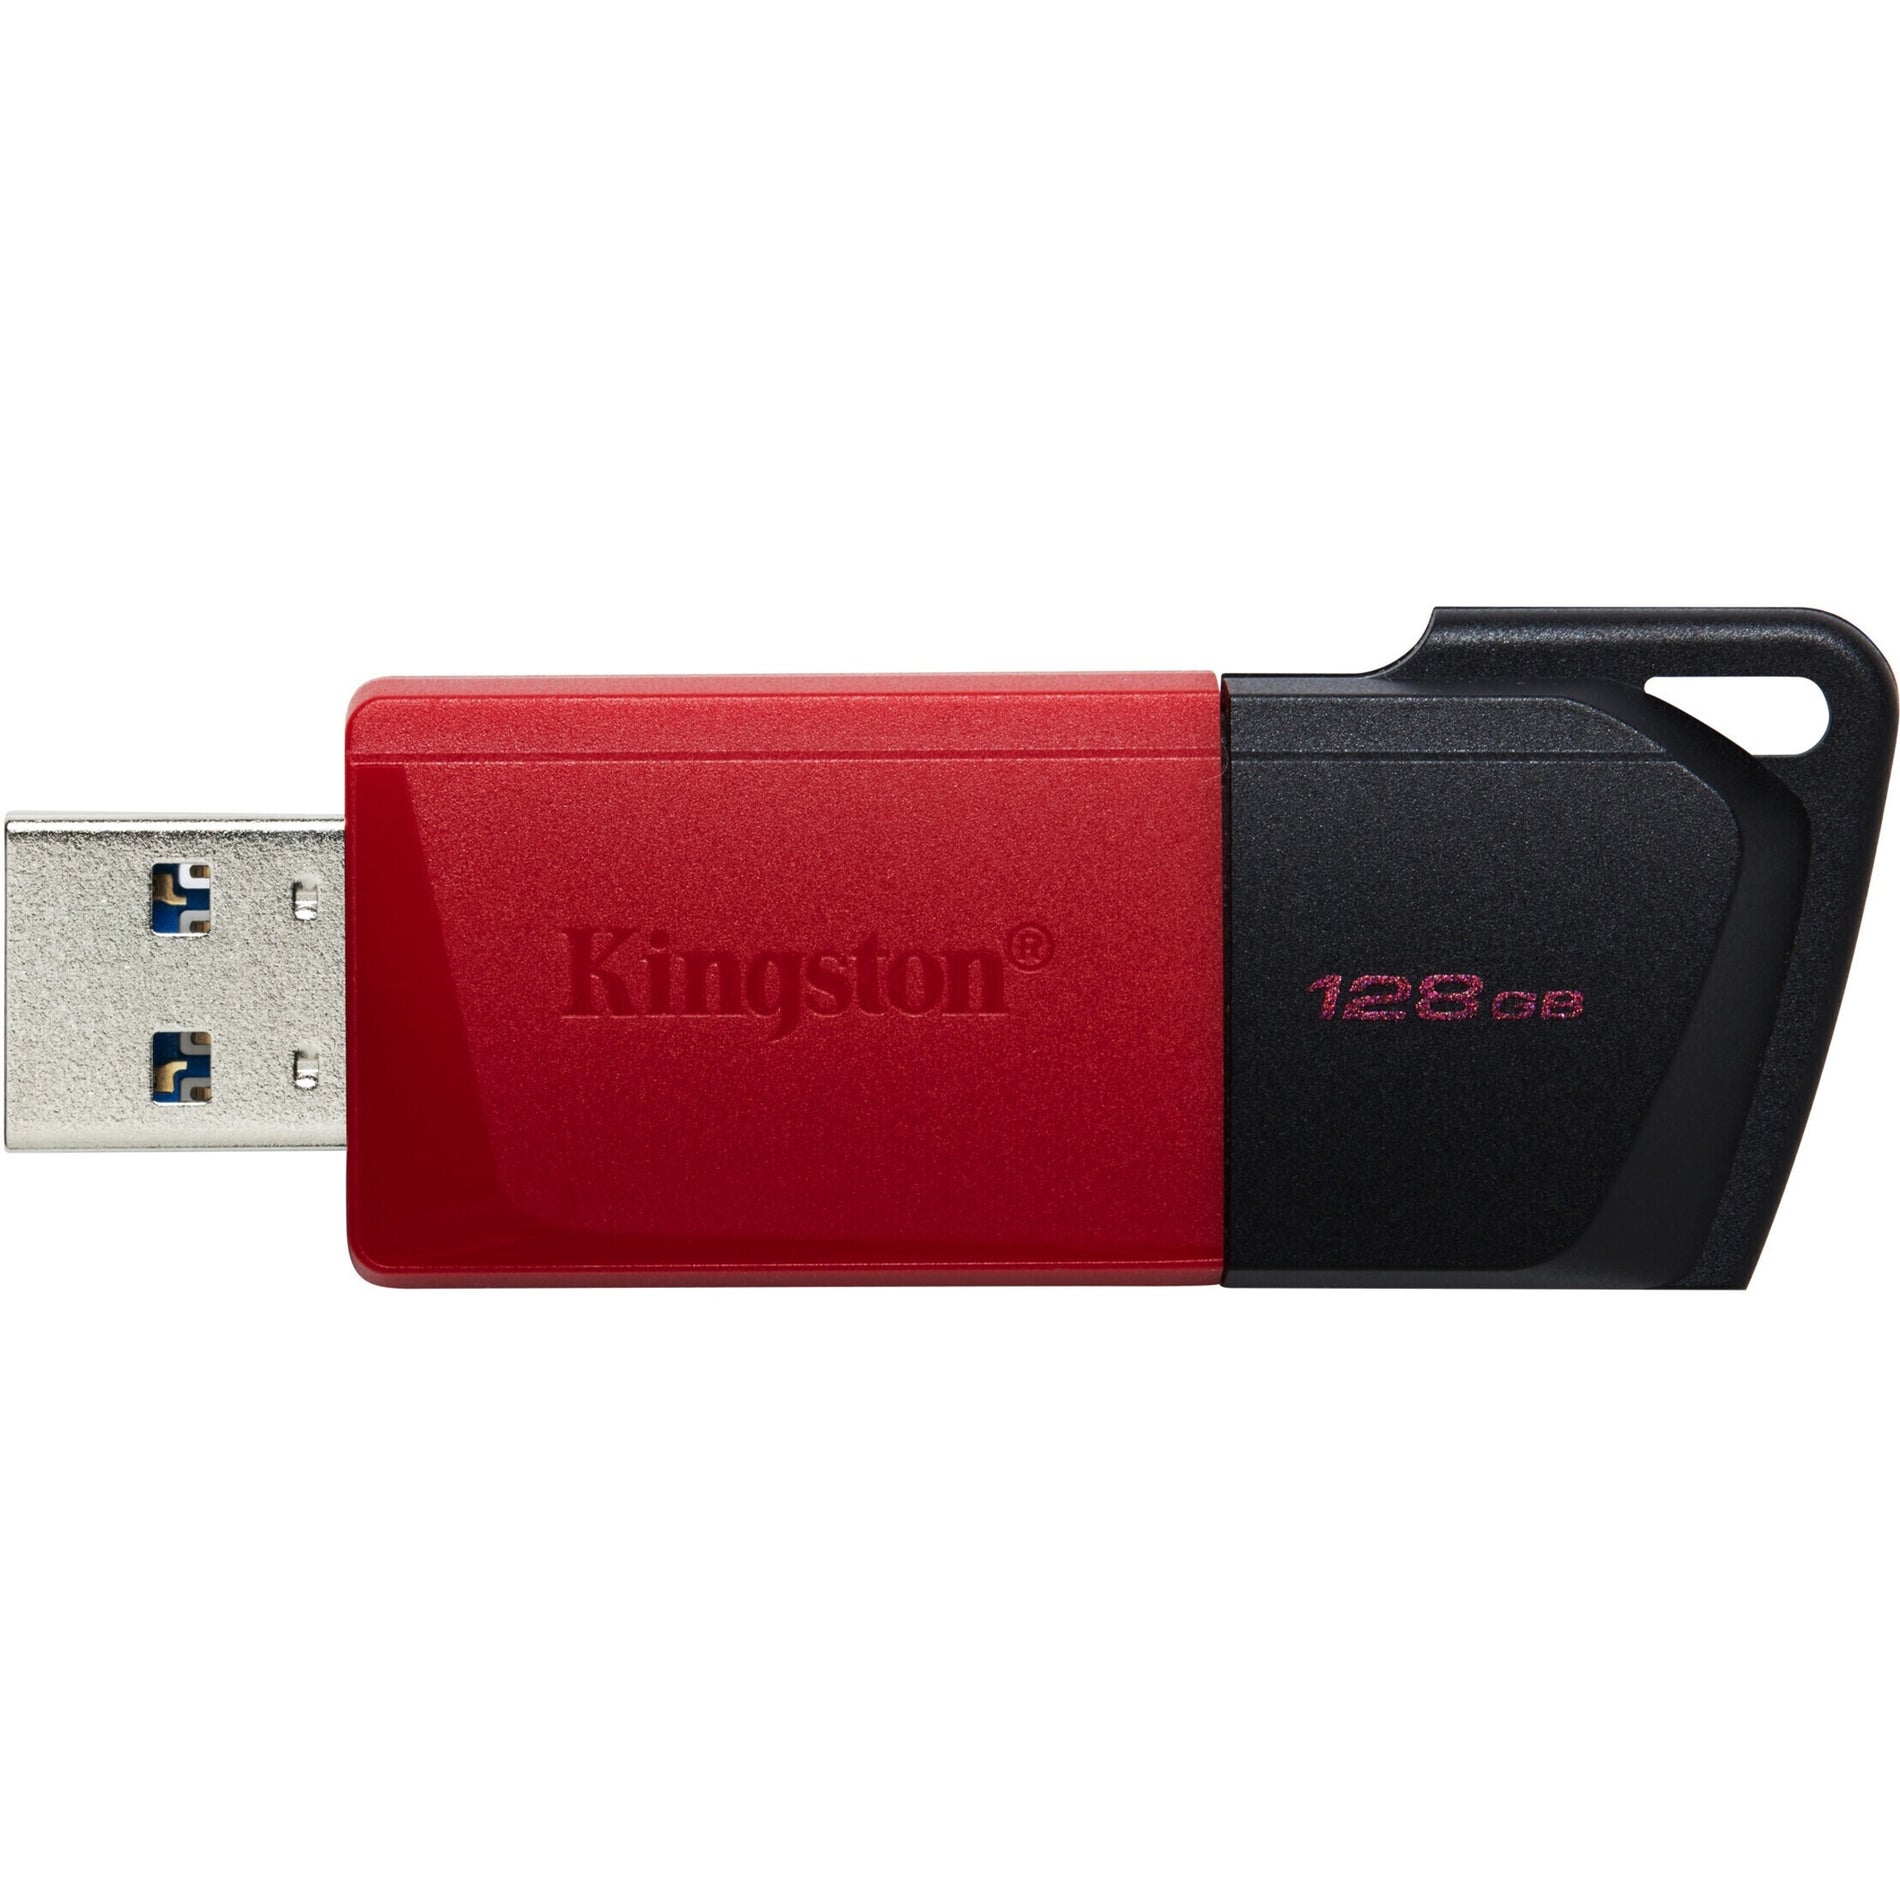 キングストン DTXM/128GB データトラベラー エクソディア M USB フラッシュドライブ、128GB ストレージ、軽量、スライディングキャップ、キーリング、ポータブル  ブランド名：キングストン